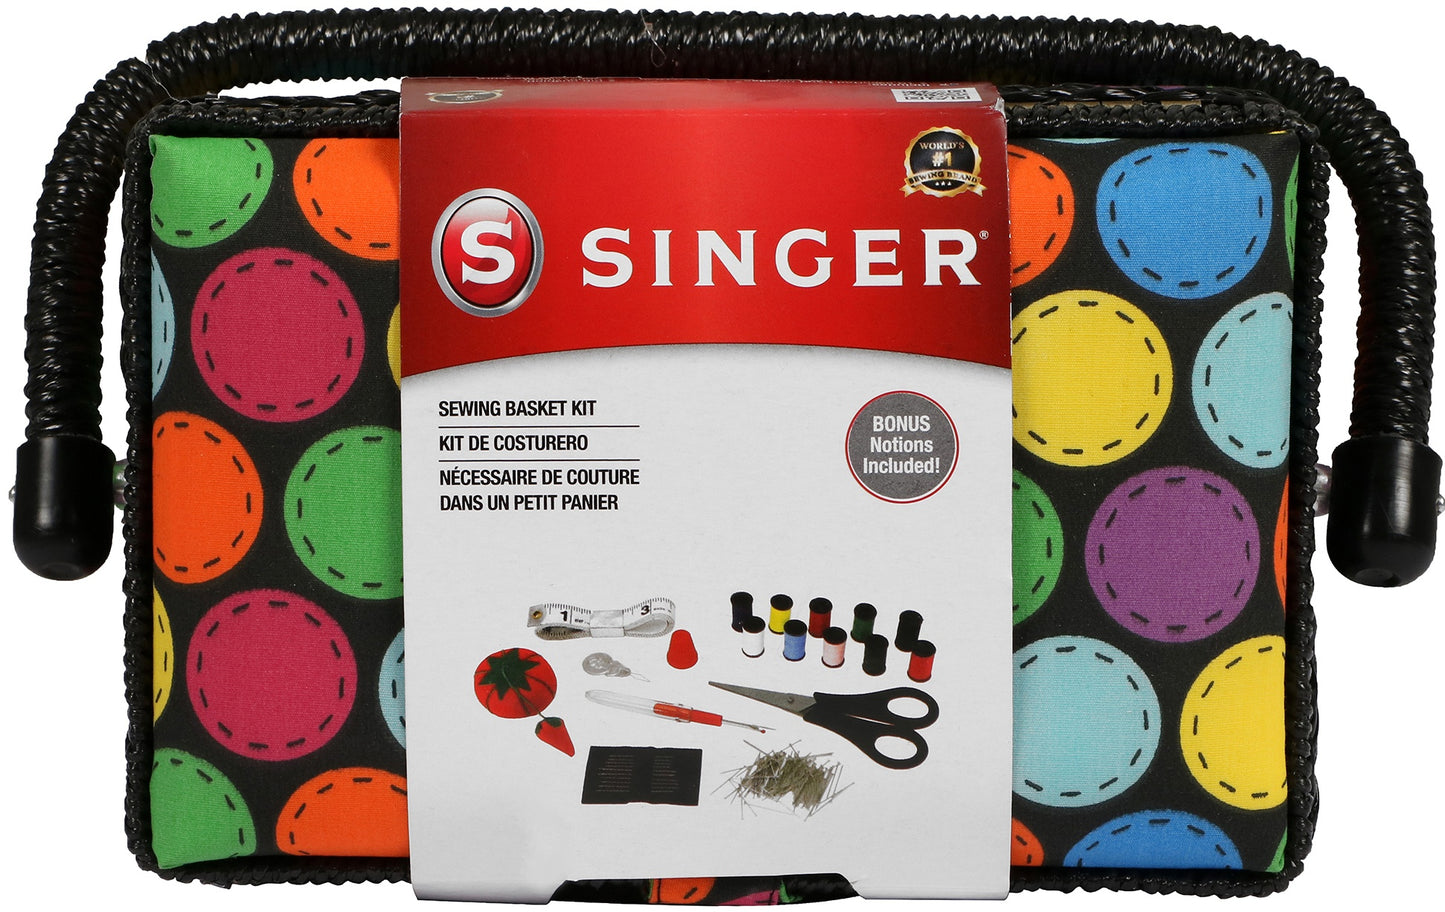 Singer Small Sewing Basket Kit 126pcs